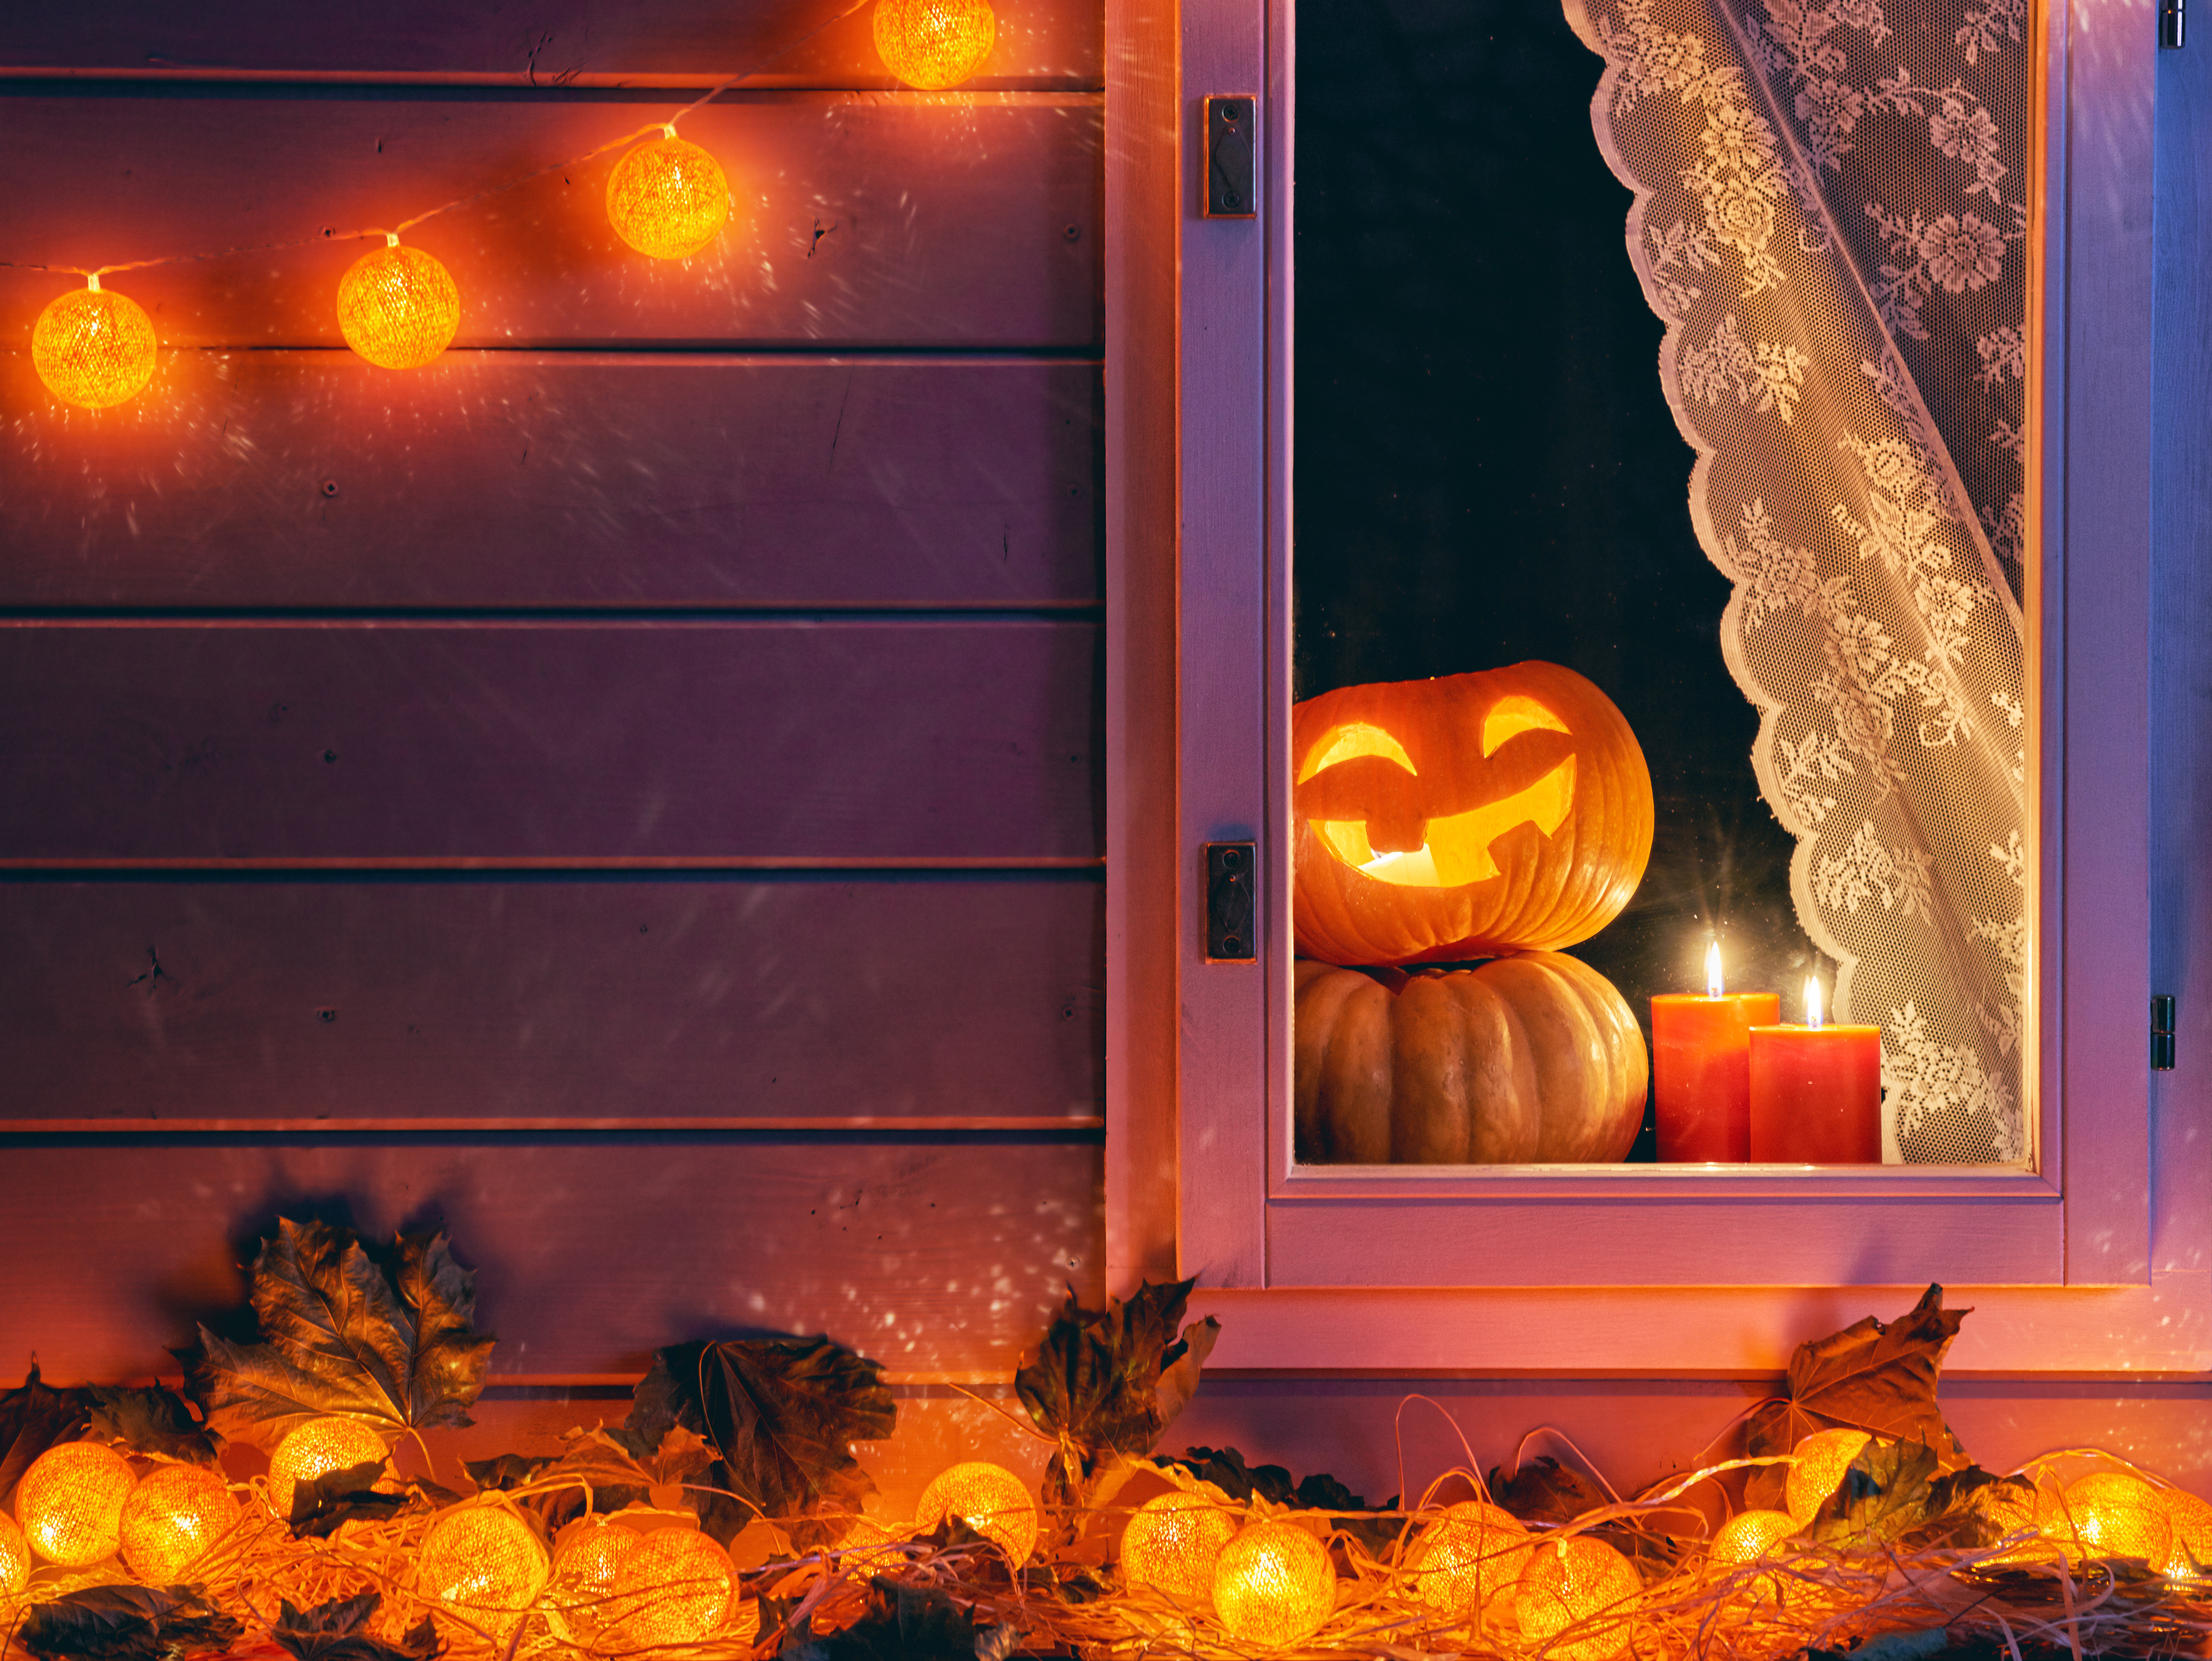 Hình nền Halloween 4K: Sắp đến Halloween, bạn muốn trang trí cho màn hình điện thoại hoặc máy tính của mình trở nên đầy khí thế? Bức ảnh Halloween 4K này chắc chắn sẽ mang đến không chỉ sự rùng rợn mà còn cực kì sắc nét và đẹp mắt.